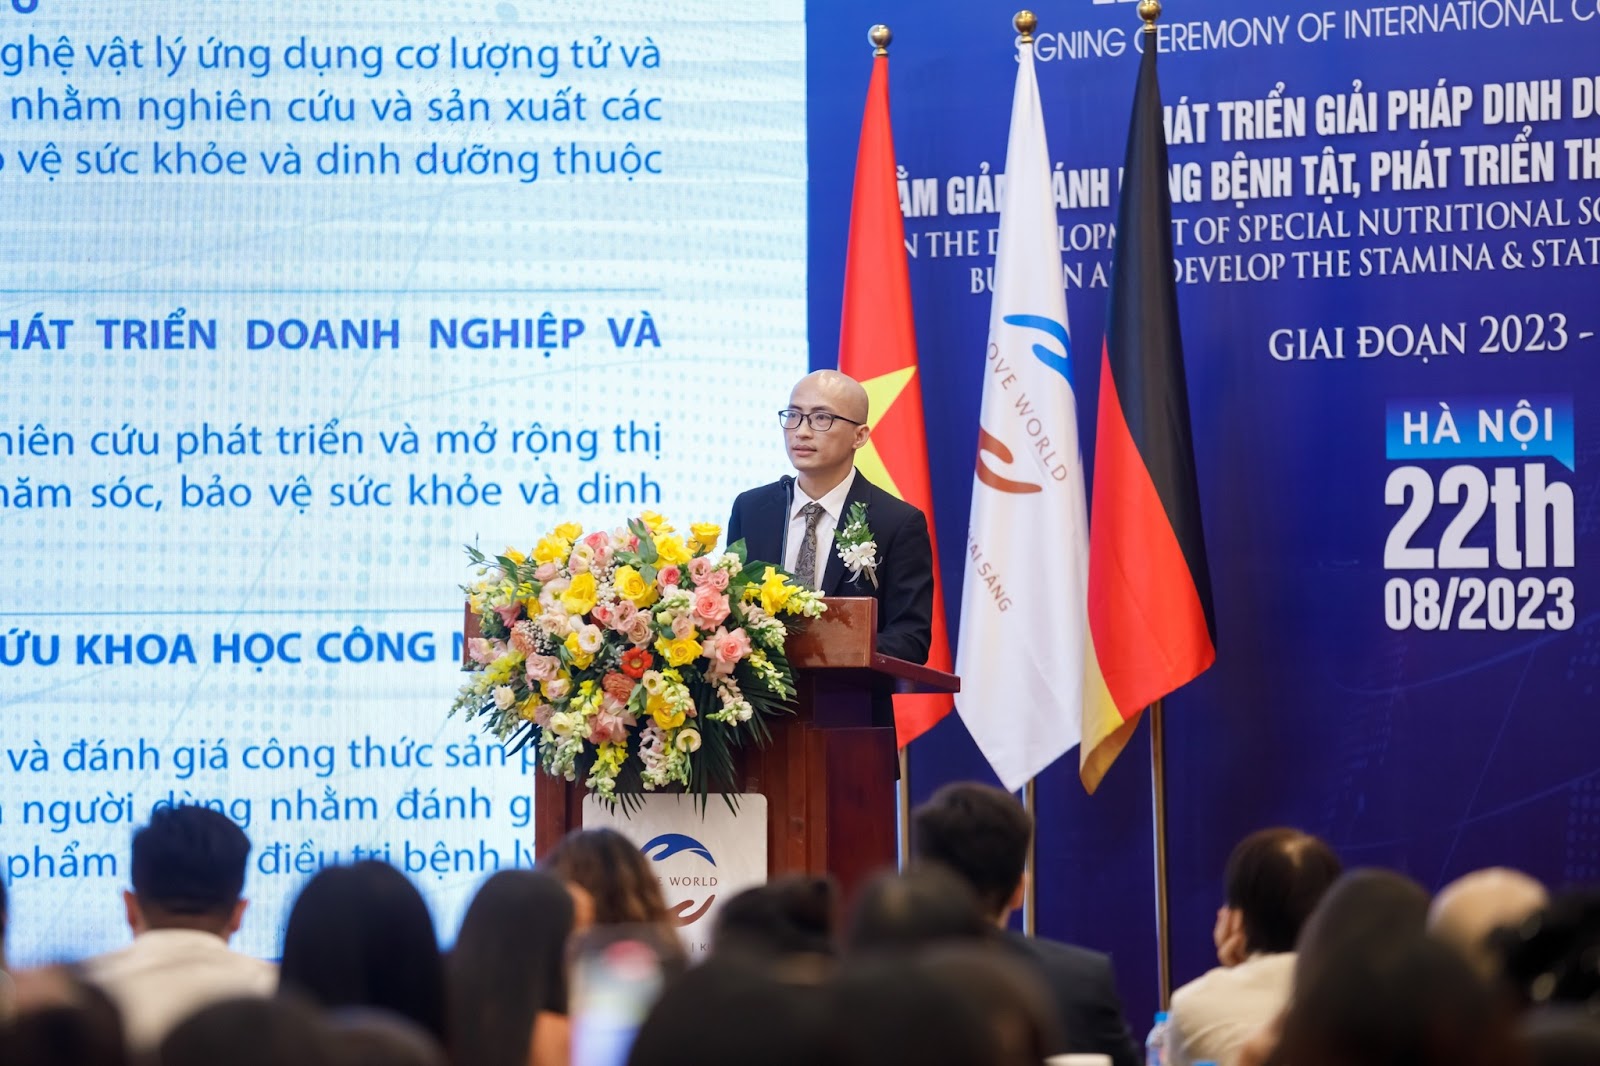 Ông Trương Sơn Hà - Chủ tịch HĐQT Công ty CP Dược phẩm Quốc tế Love World phát biểu tại buổi lễ